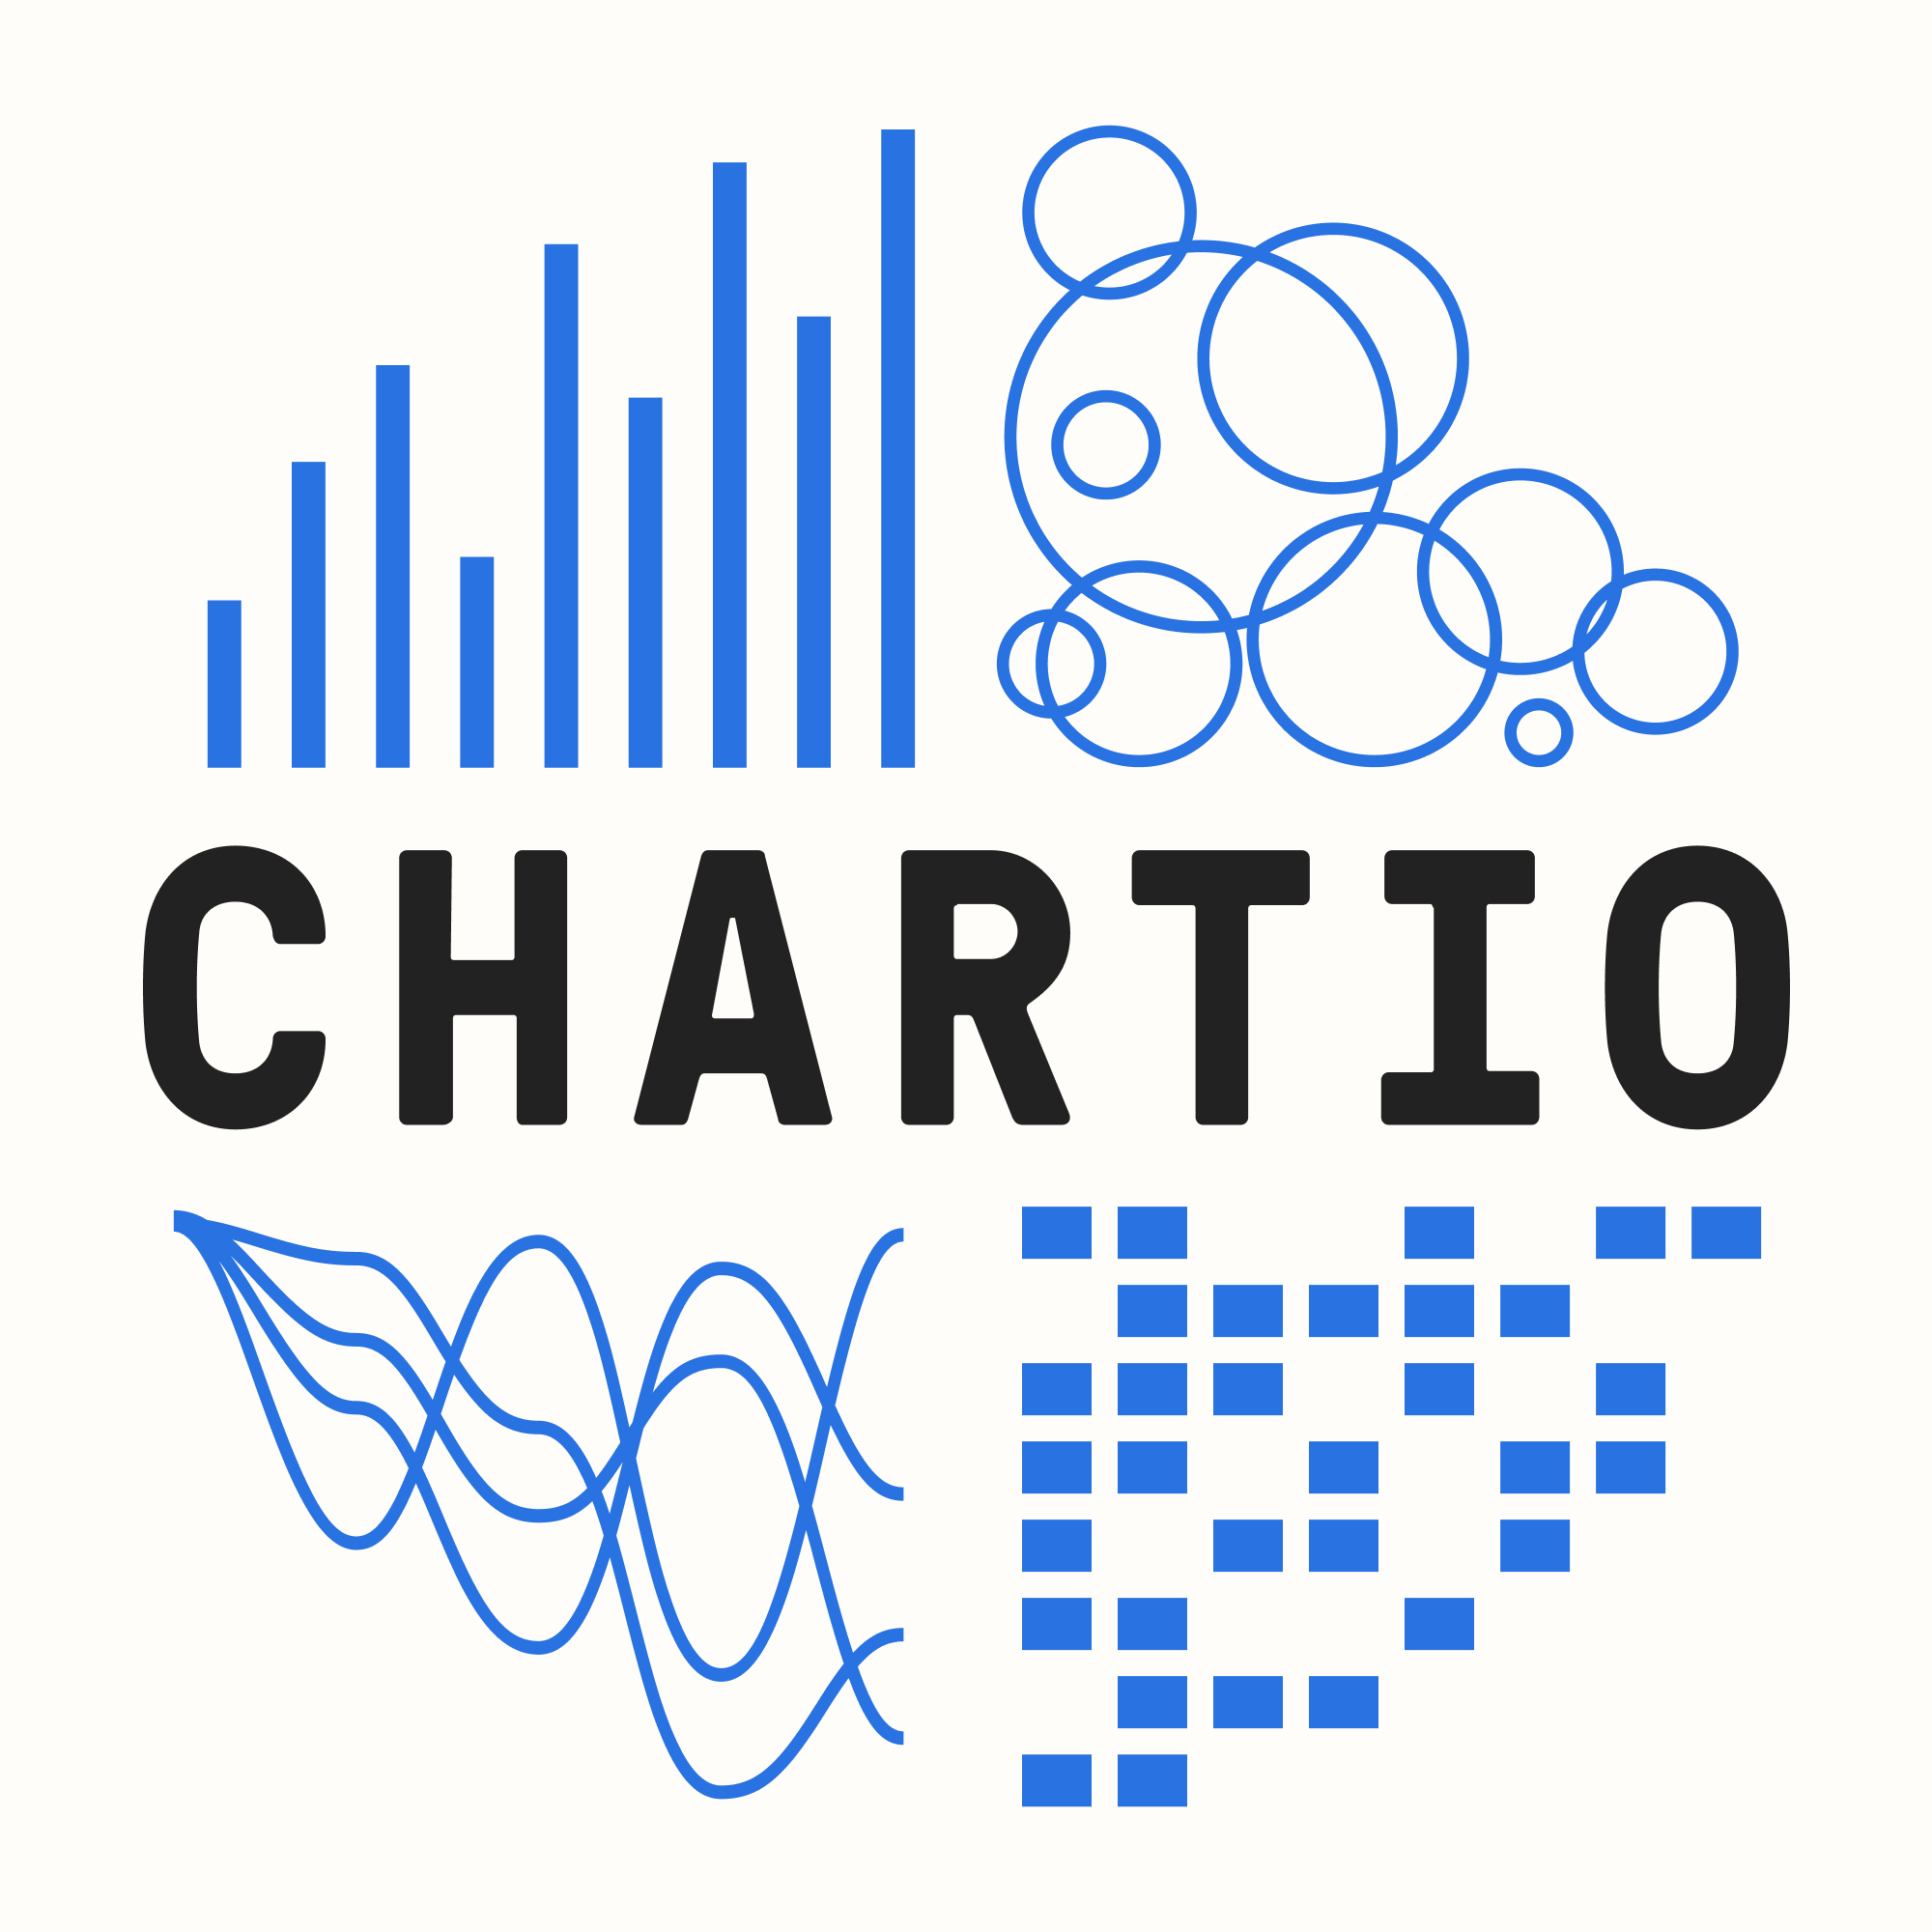 The Chartio emblem 2020